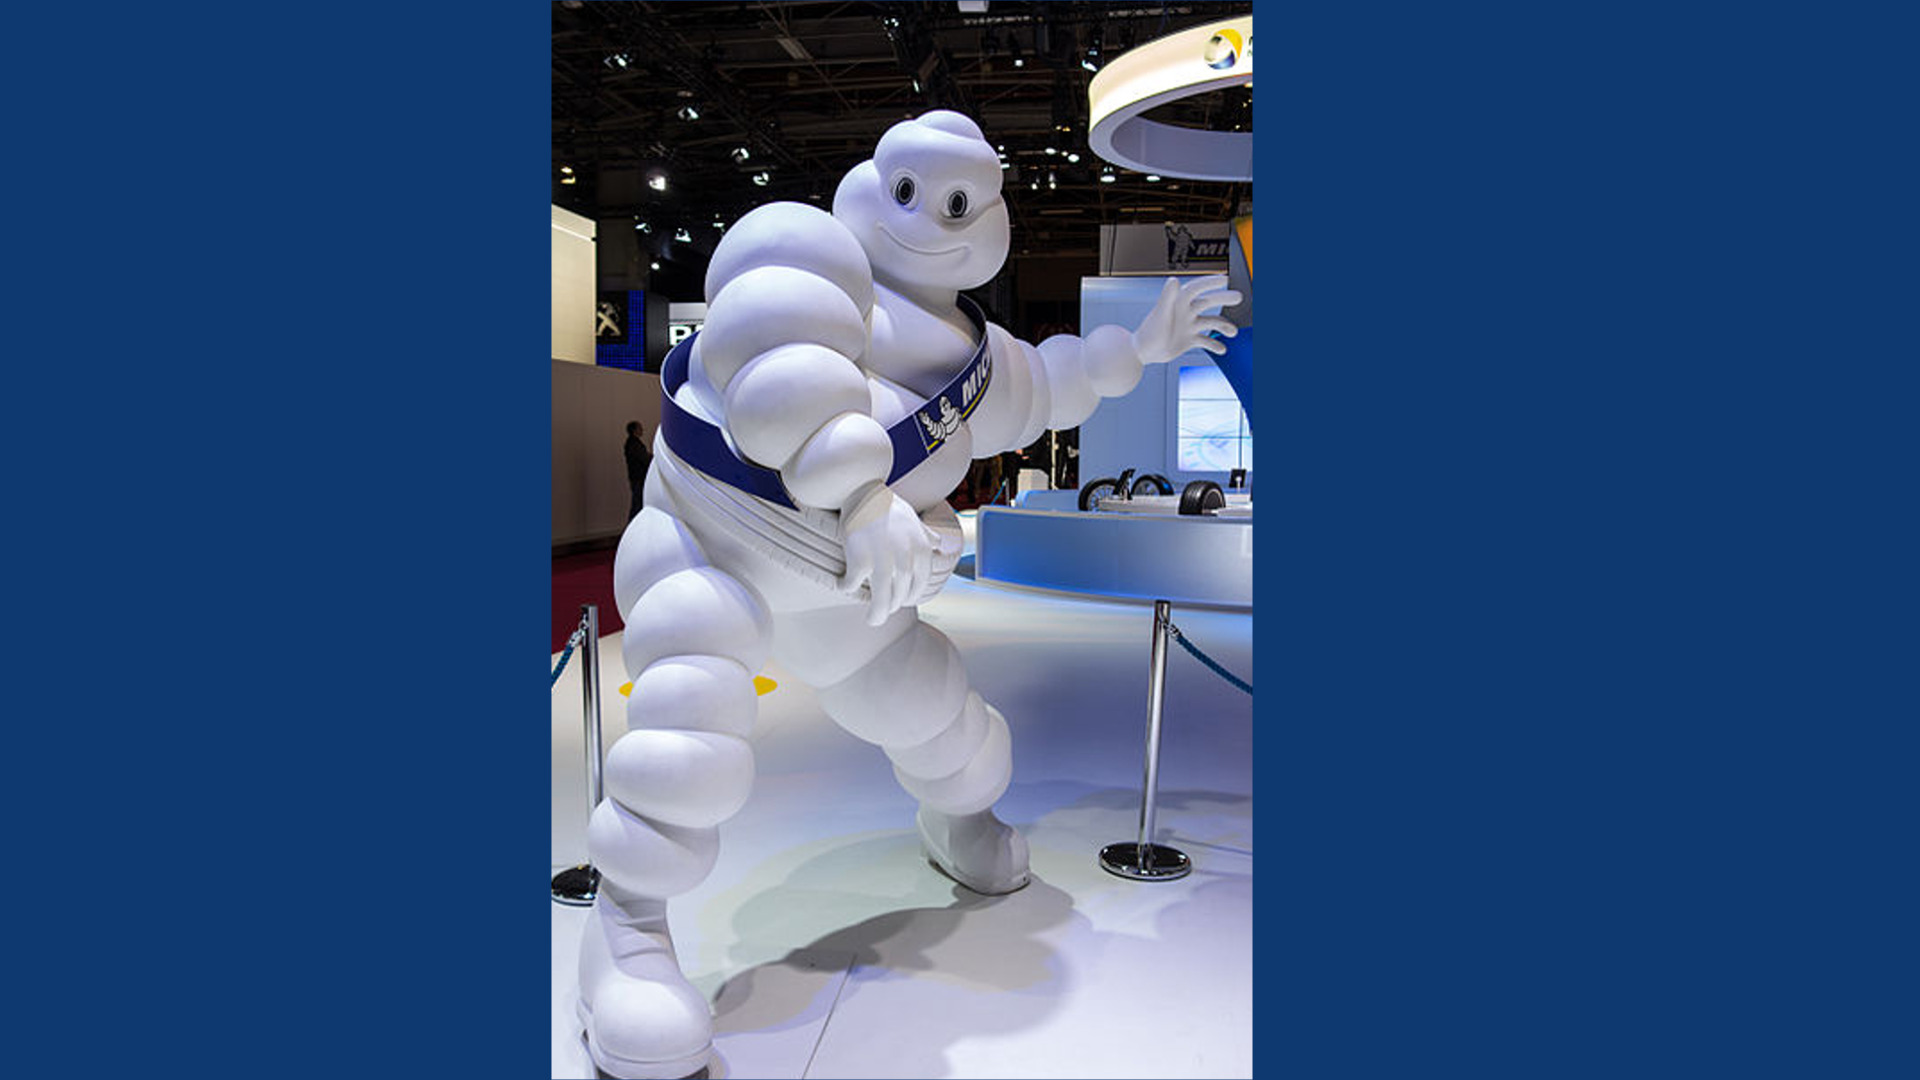 El muñeco Michelin sigue siendo uno de los símbolos comerciales mas conocidos del mundo1920